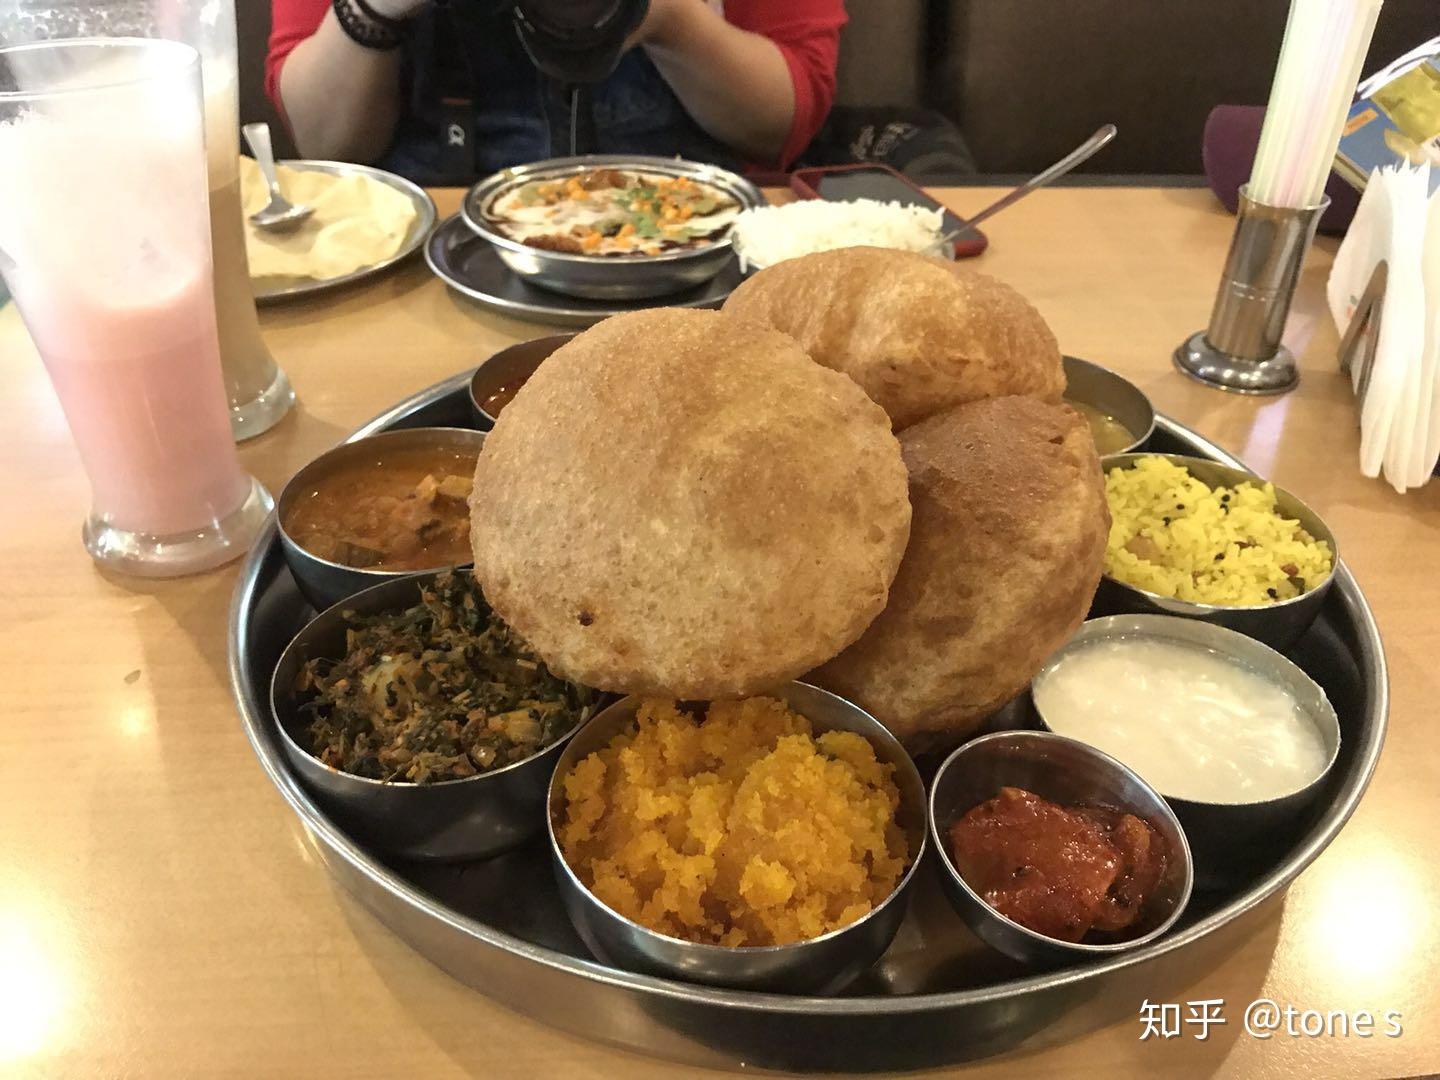 印度食物真的脏吗,吃了会拉肚子吗?